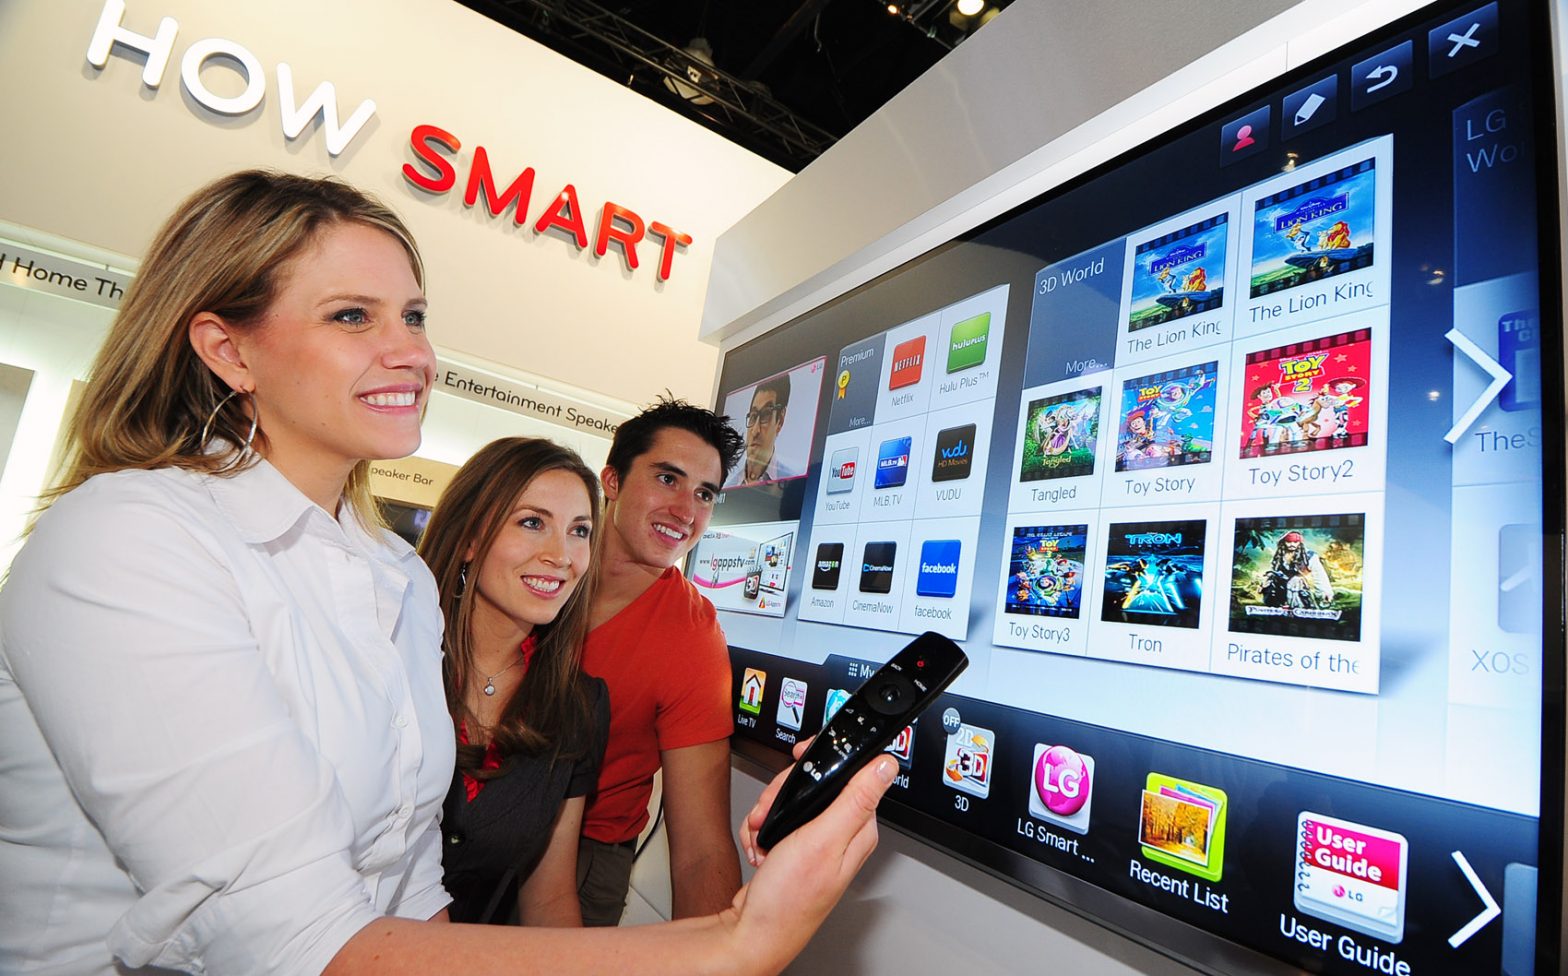 Телевизор LG Cinema 3d Smart TV. LG Netcast Smart TV. LG Smart TV_with a model (3).jpg - LG Newsroom. 2012 LG Smart TV_with a model (3).jpg - LG Newsroom. Телевизор lg 2012